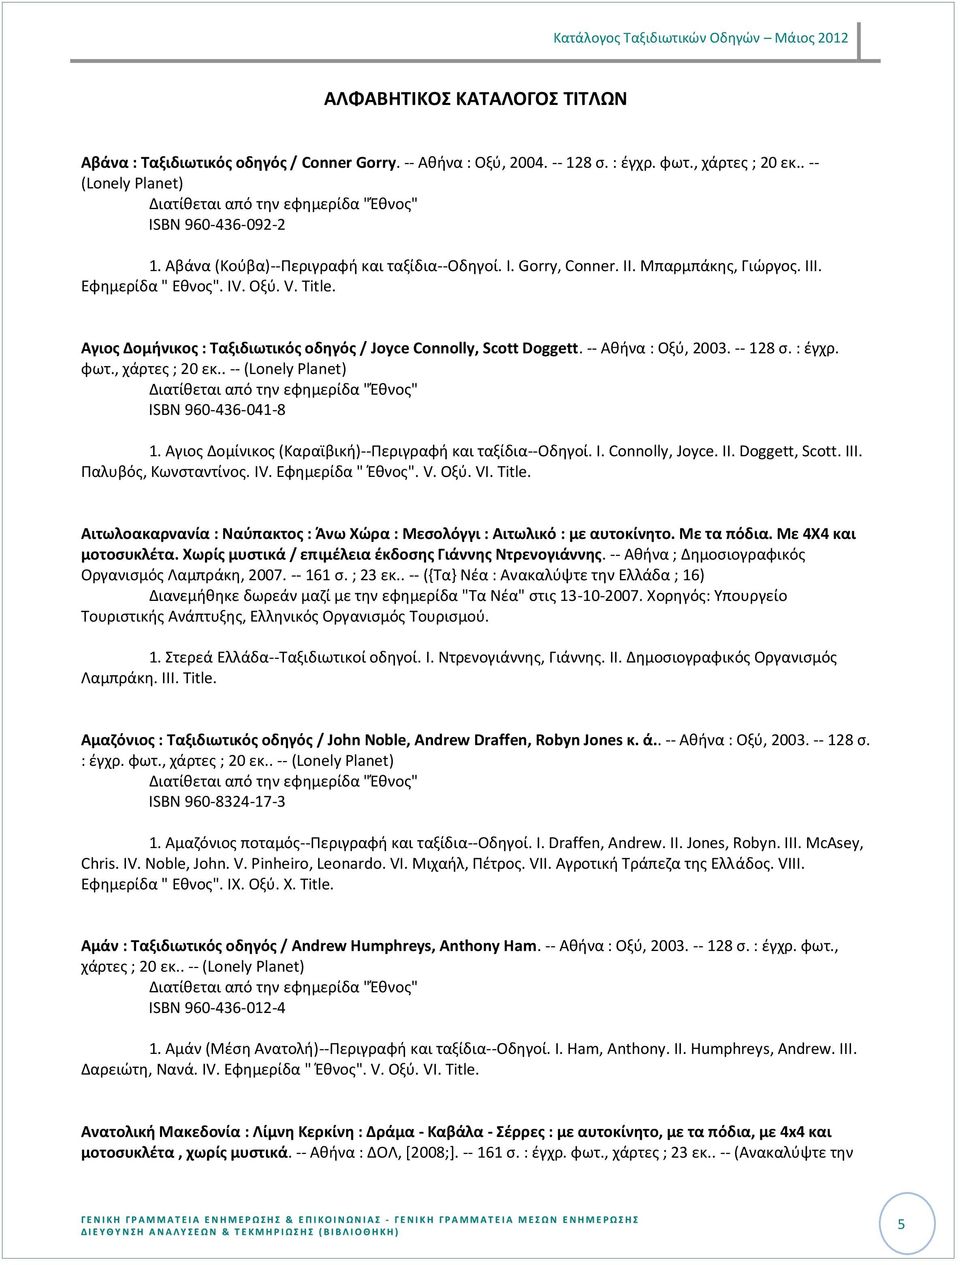 Αγιοσ Δομινικοσ : Ταξιδιωτικόσ οδθγόσ / Joyce Connolly, Scott Doggett. -- Ακινα : Οξφ, 2003. -- 128 ς. : ζγχρ. φωτ., ISBN 960-436-041-8 1. Αγιοσ Δομίνικοσ (Καραϊβικι)--Περιγραφι και ταξίδια--οδθγοί.